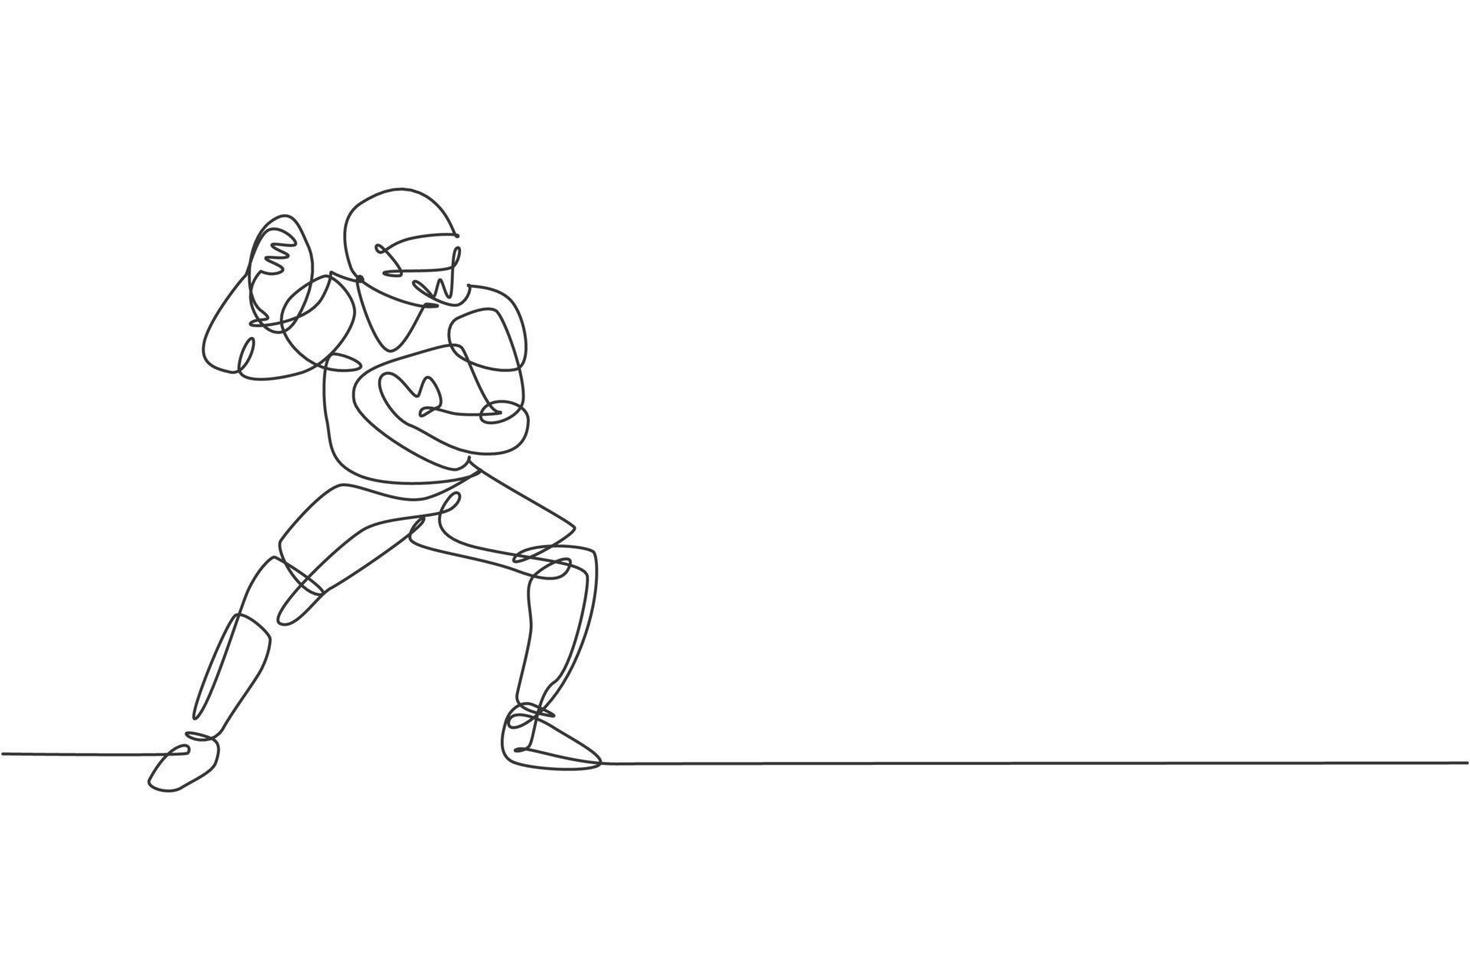 un dibujo de línea continua de un joven jugador deportivo de fútbol americano que pasa el balón a sus compañeros de equipo para el afiche de la competencia. concepto de trabajo en equipo deportivo. Ilustración de vector de diseño de dibujo de línea única dinámica